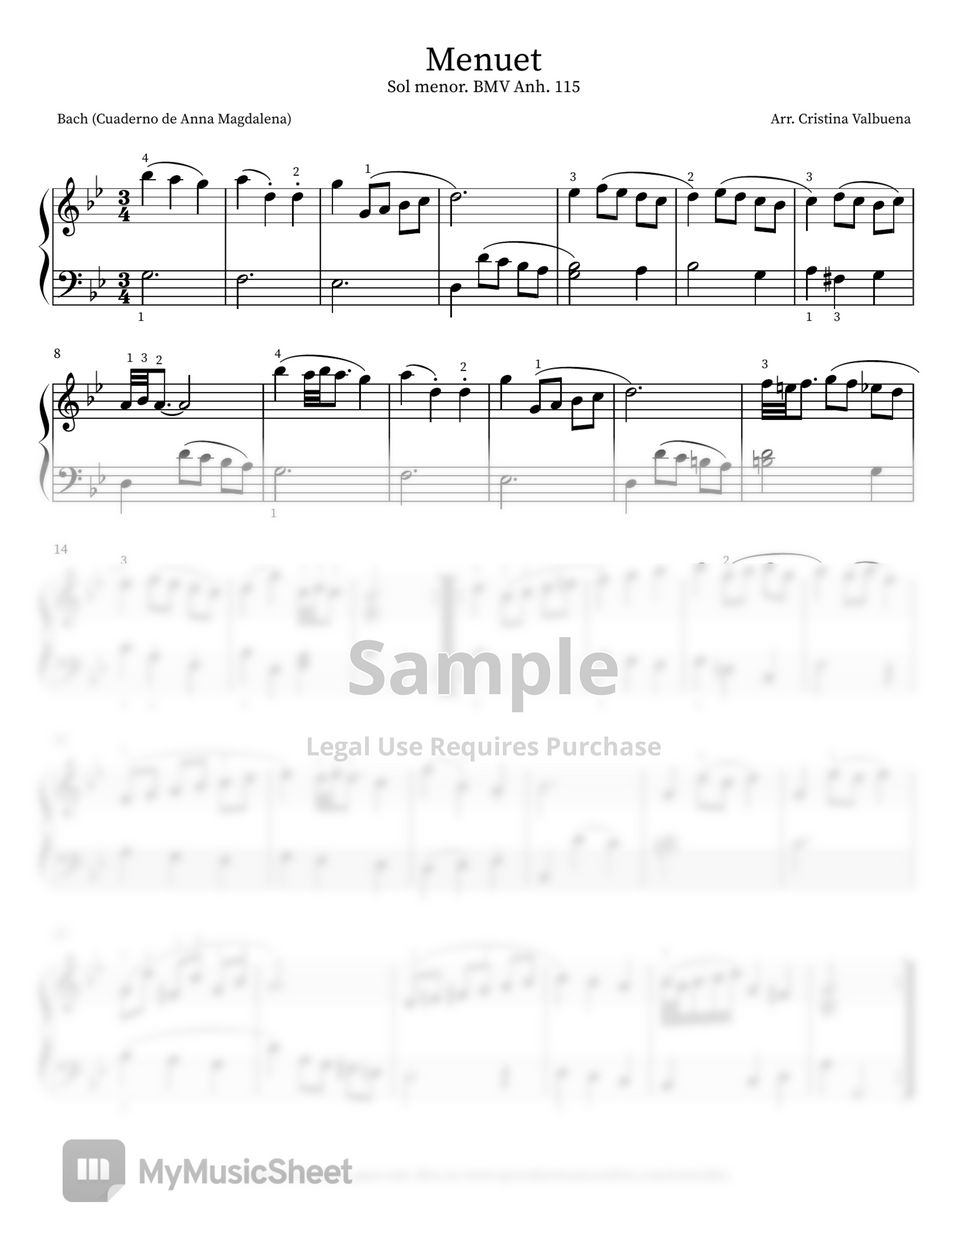 Johann Sebastian Bach - Menuet en Sol menor BMV Anh. 115 by Cristina Valbuena